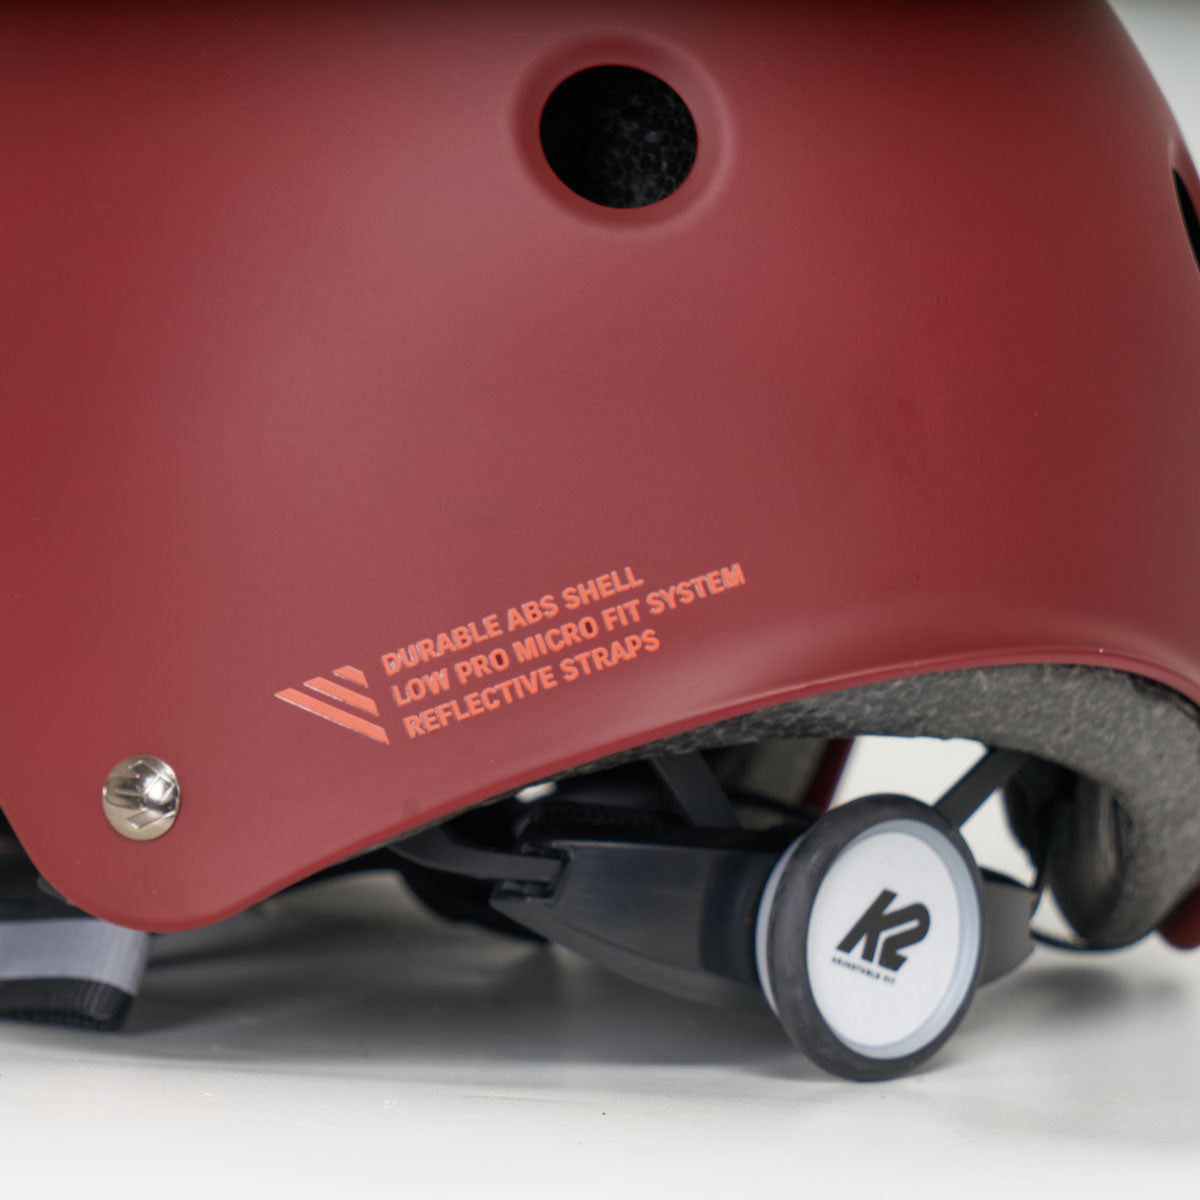 K2 Varsity Pro Burgundy Helmet